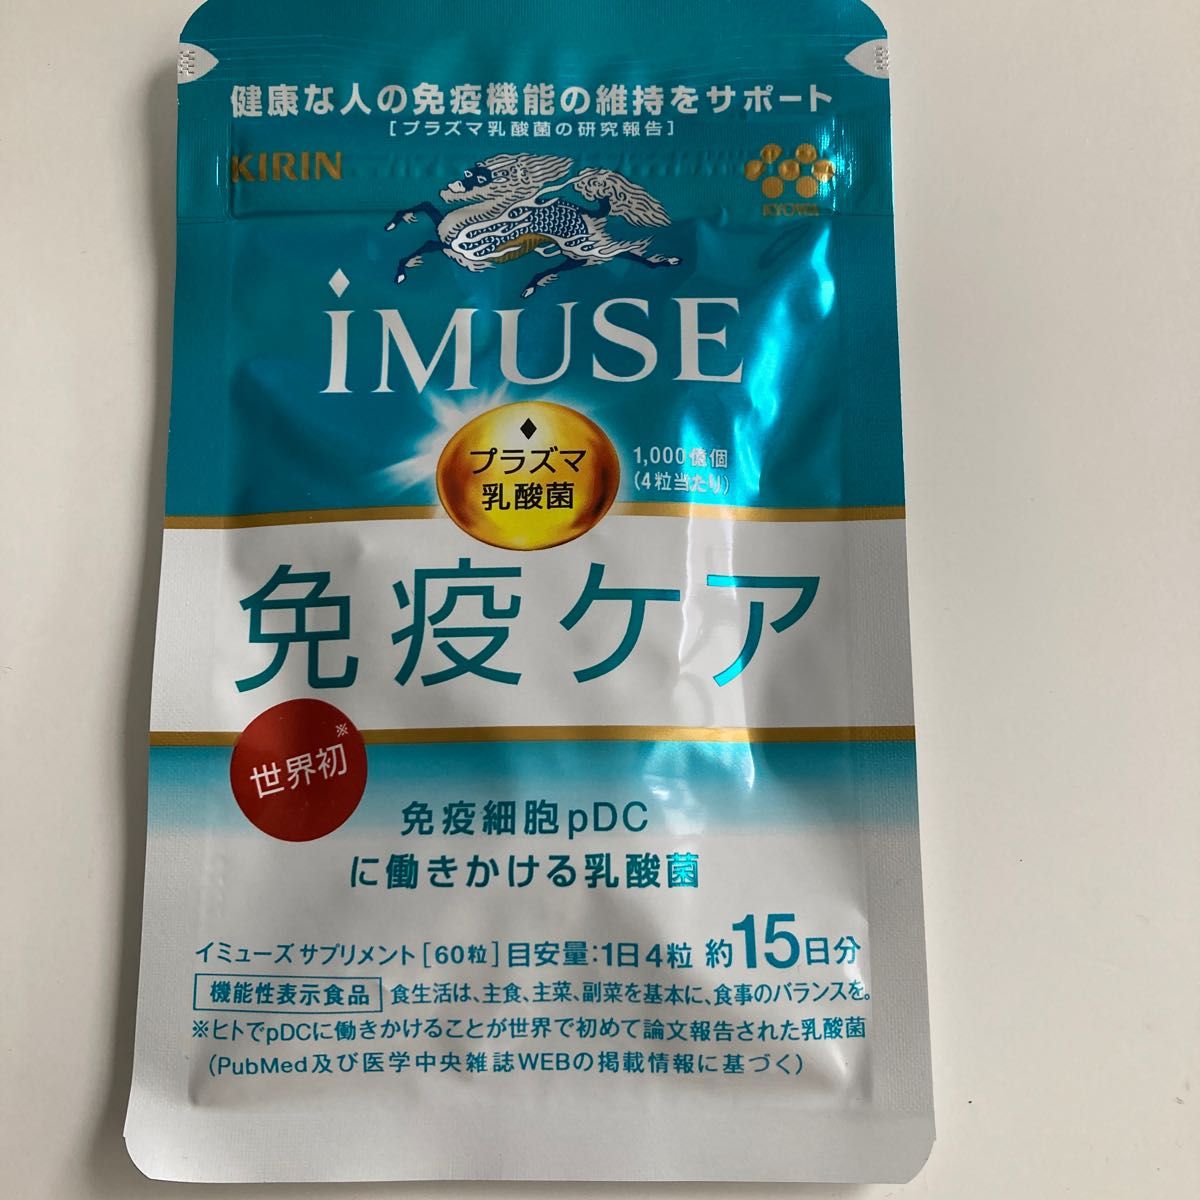 新発売】キリン協和発酵バイオのiMUSE(イミューズ)免疫ケア筋力サポート